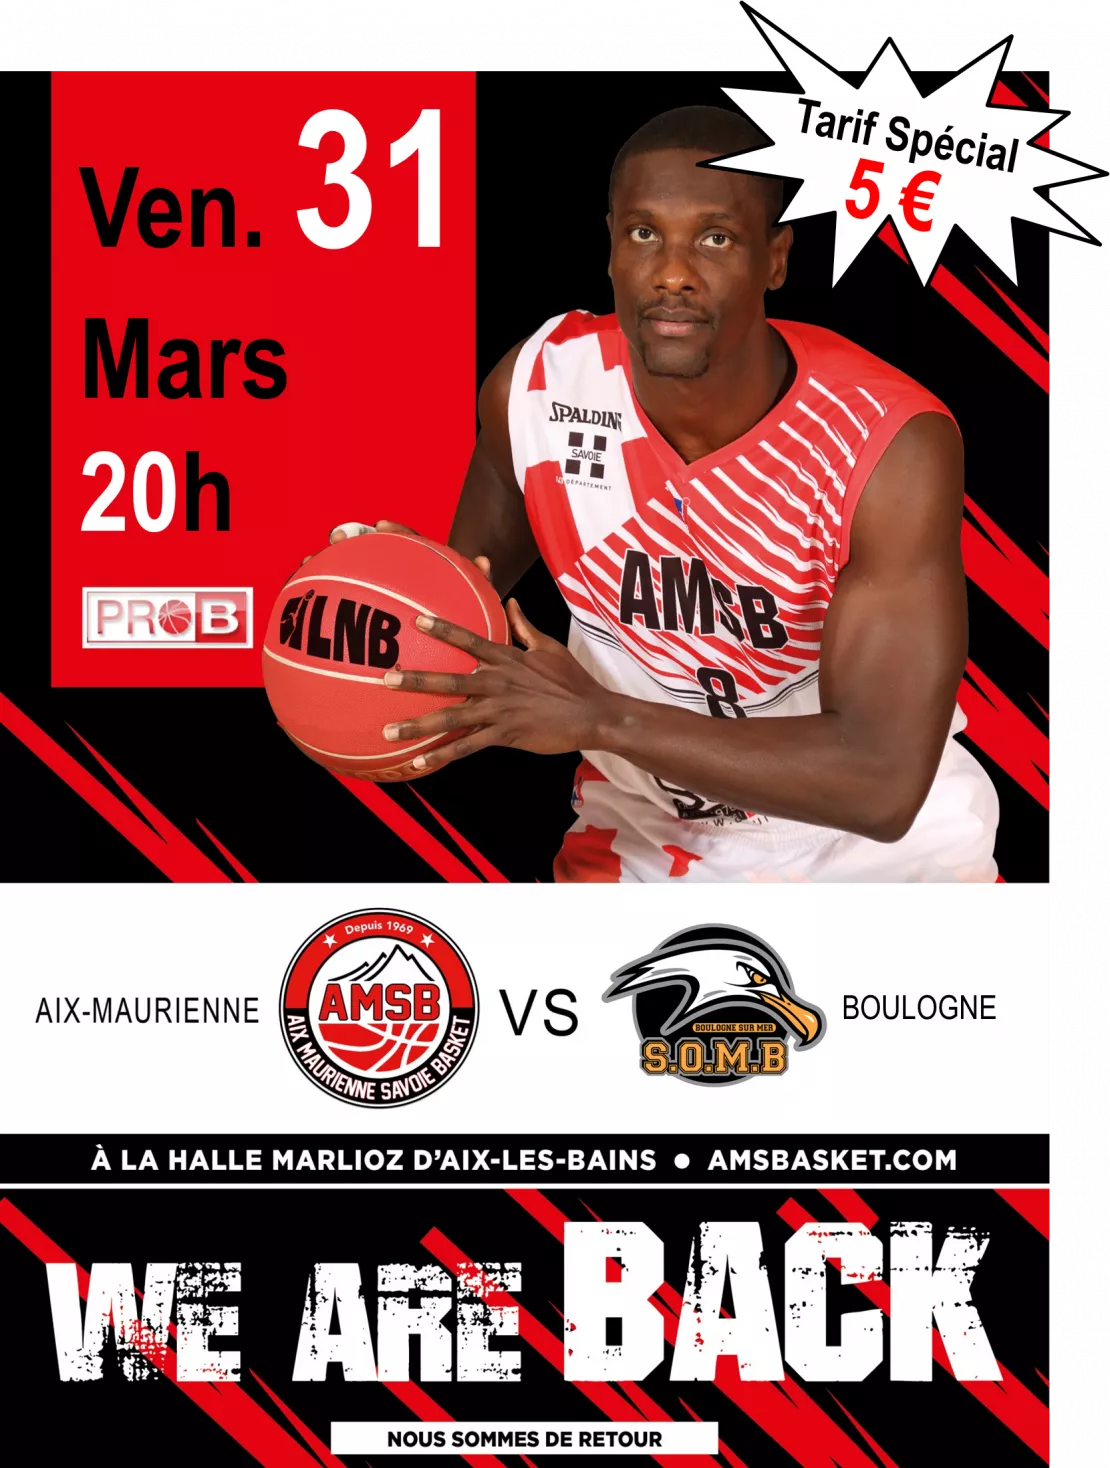 PARTENAIRE : Match de basket à Aix-les-Bains